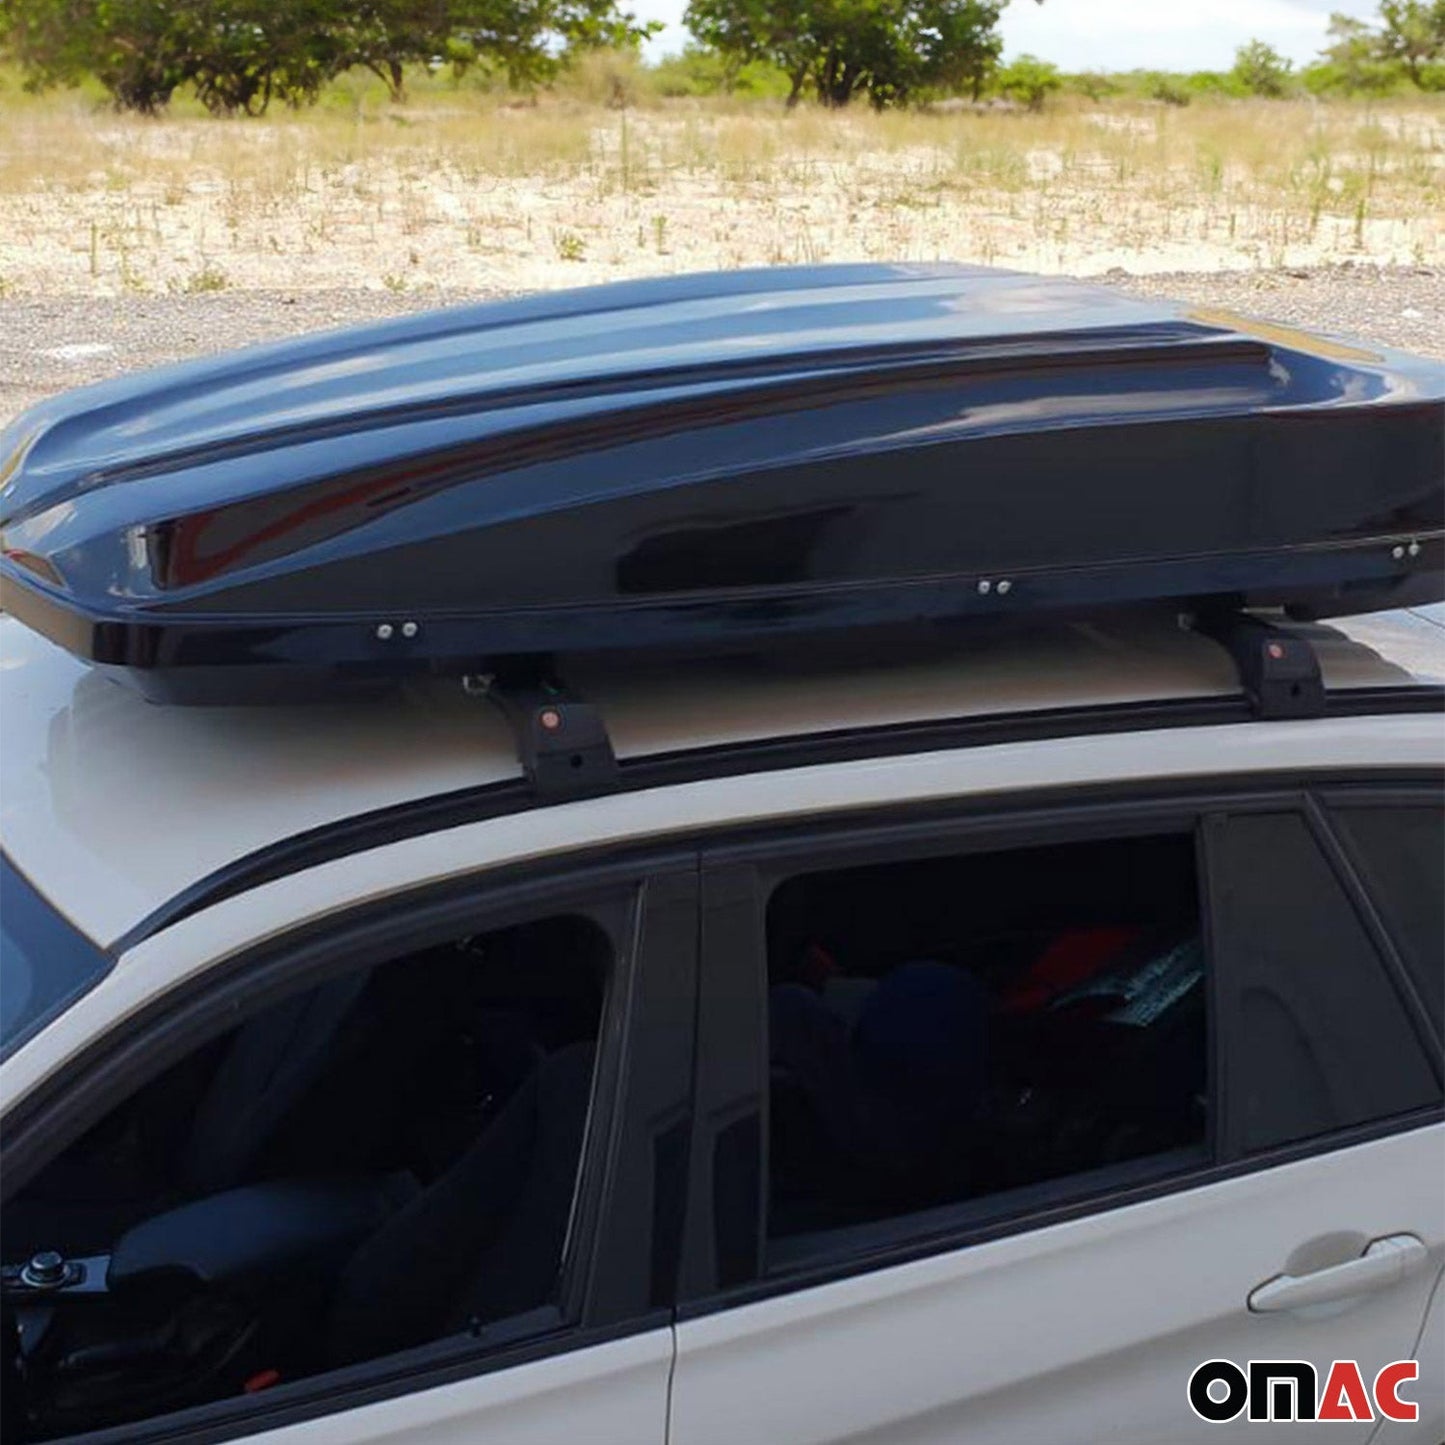 OMAC Roof Rack Cross Bars Aluminum for Hyundai Santa Fe 2013-2018 Gray 2Pcs 3223923